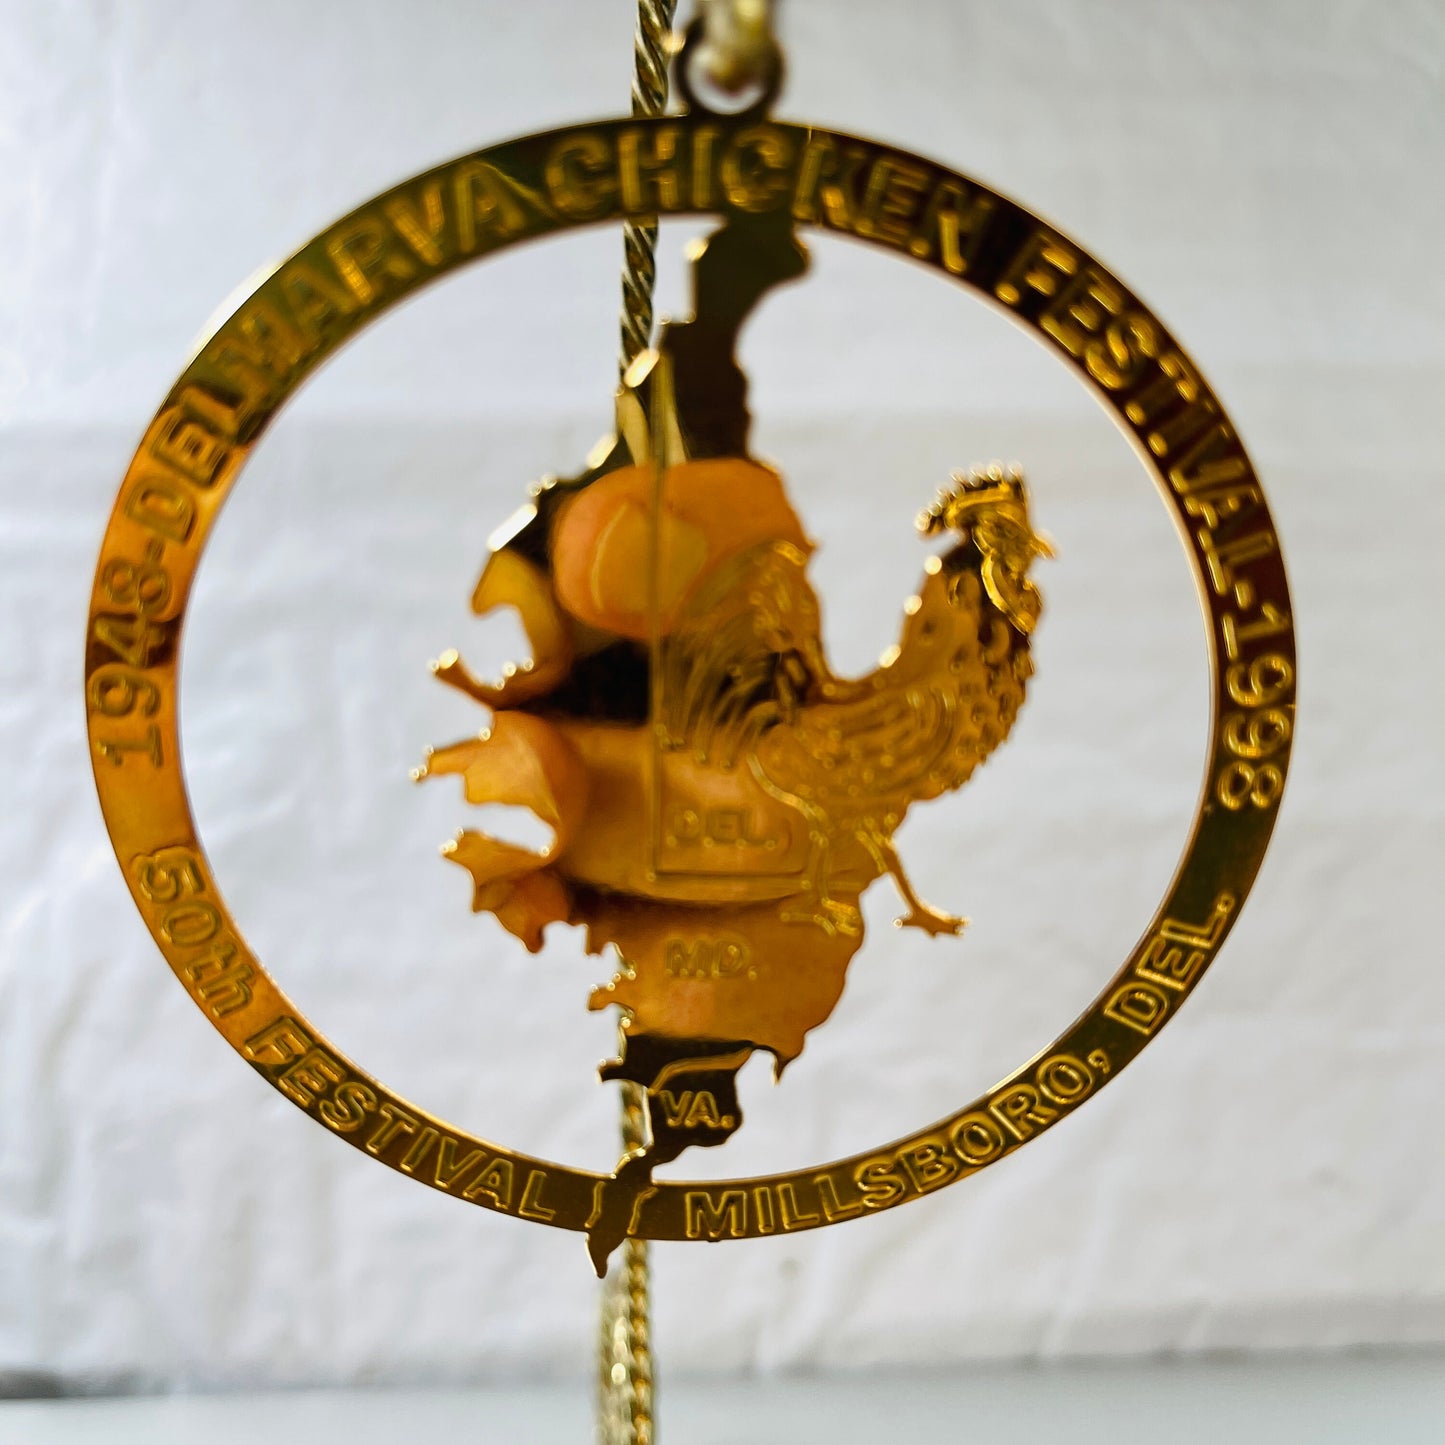 Delmarva Chicken Festival, 50th Anniversary 1948-1998, Gold Tone Ornament